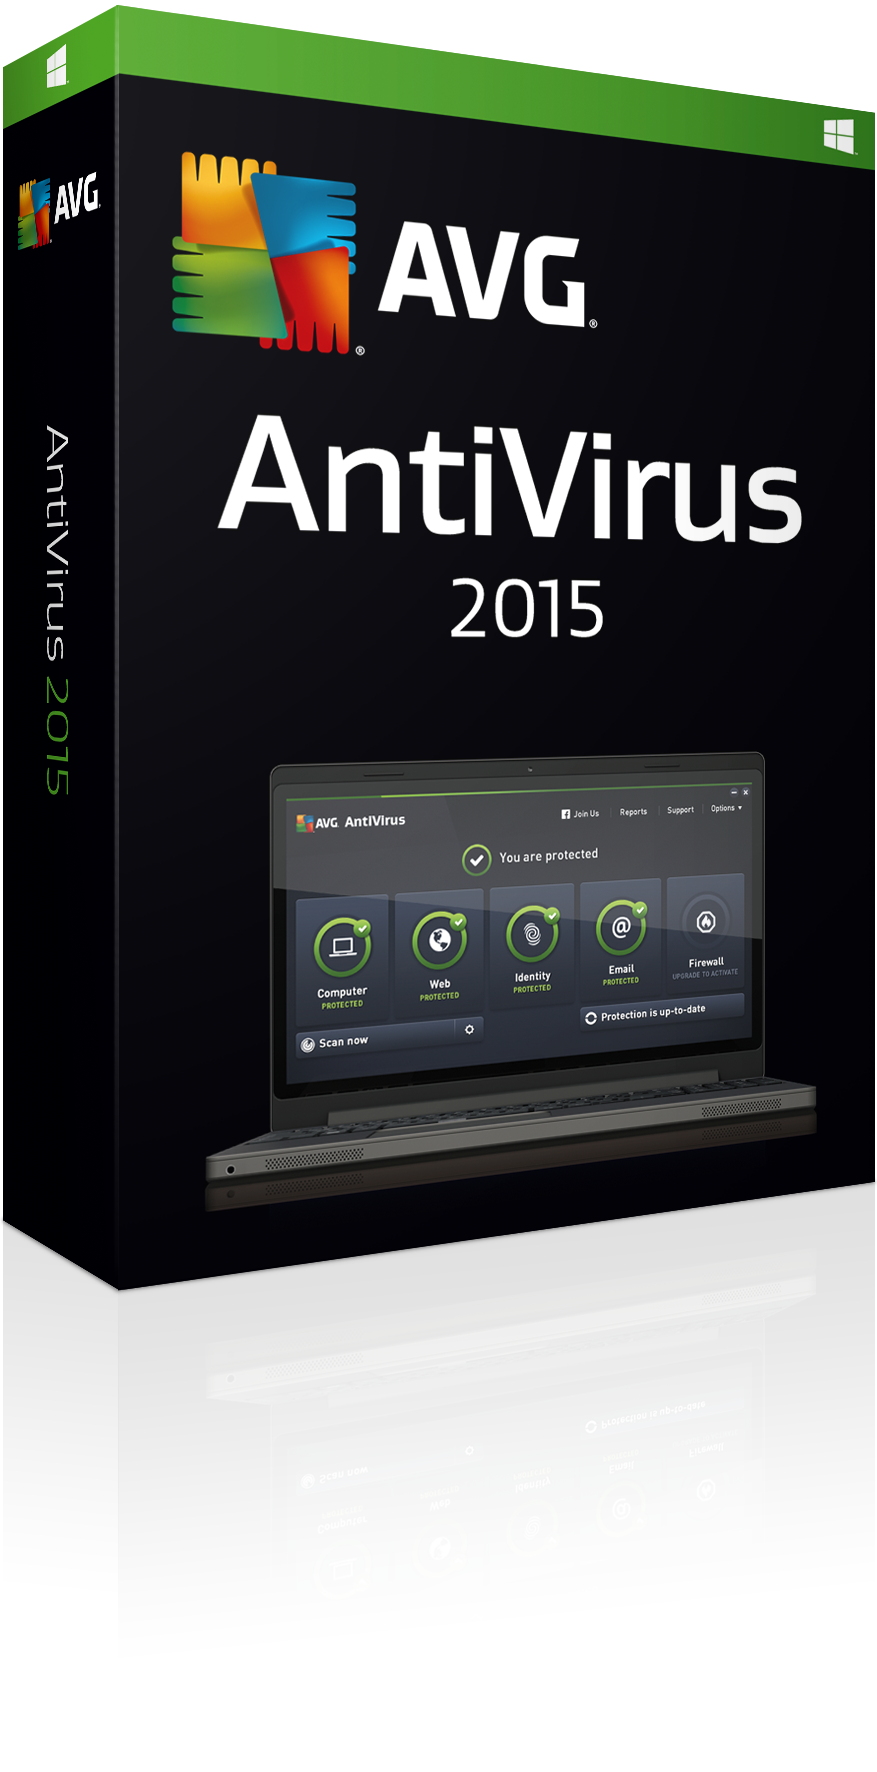 AVG Antivirus 2015